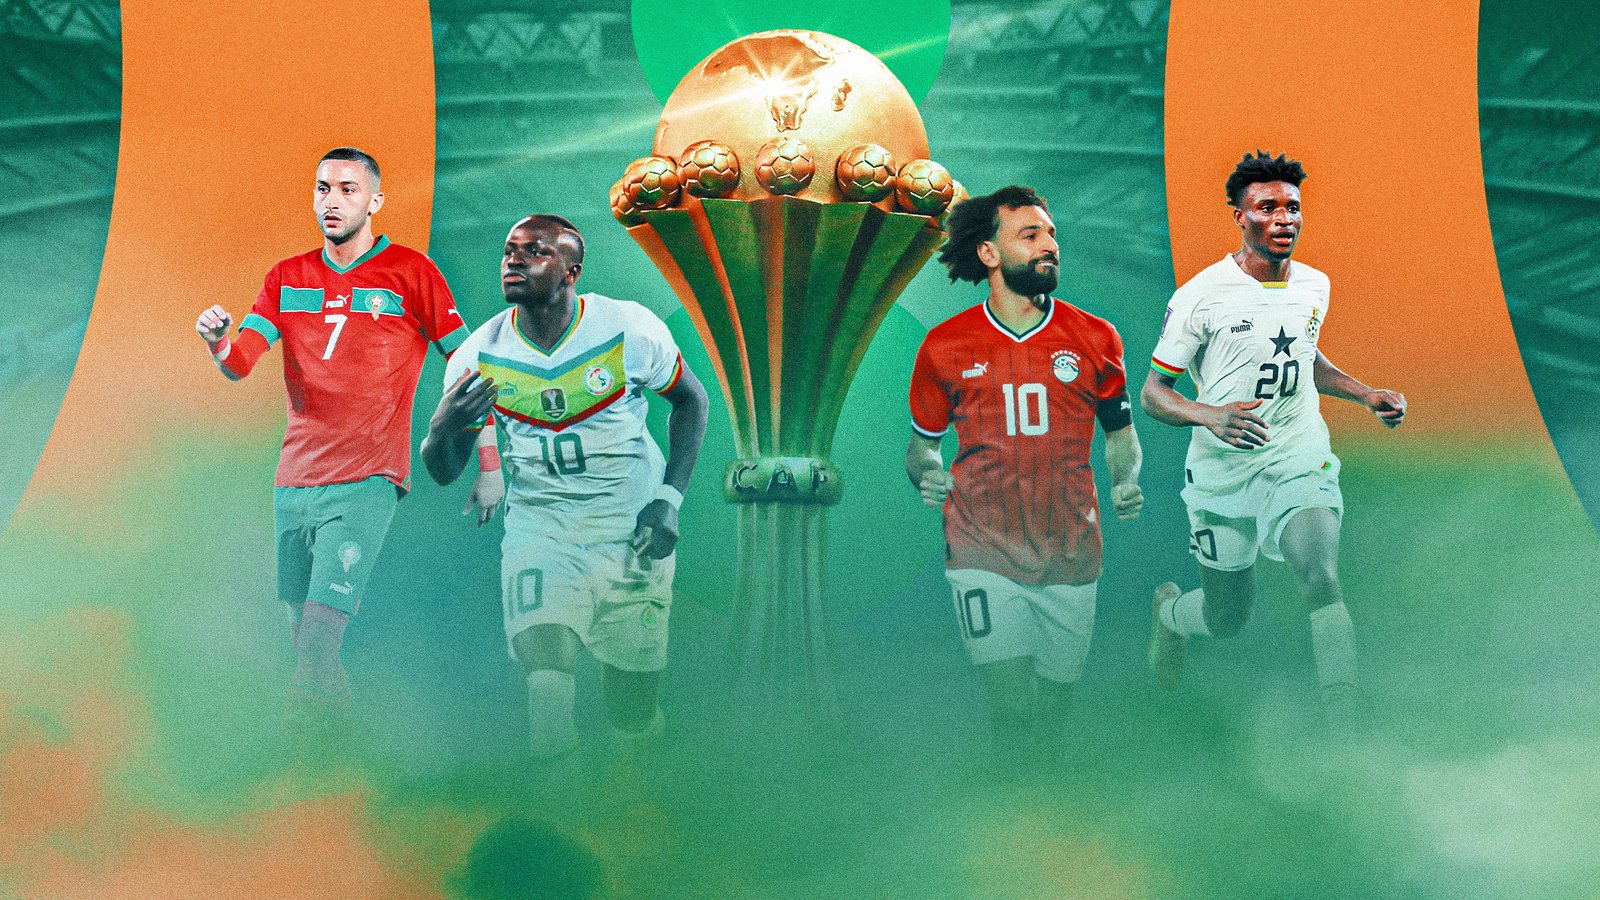 AFCON: Sky Sports จะแสดงทุกการแข่งขัน Africa Cup of Nations จากทัวร์นาเมนต์ในไอวอรี่โคสต์รวมถึงรอบชิงชนะเลิศ |  ข่าวฟุตบอล